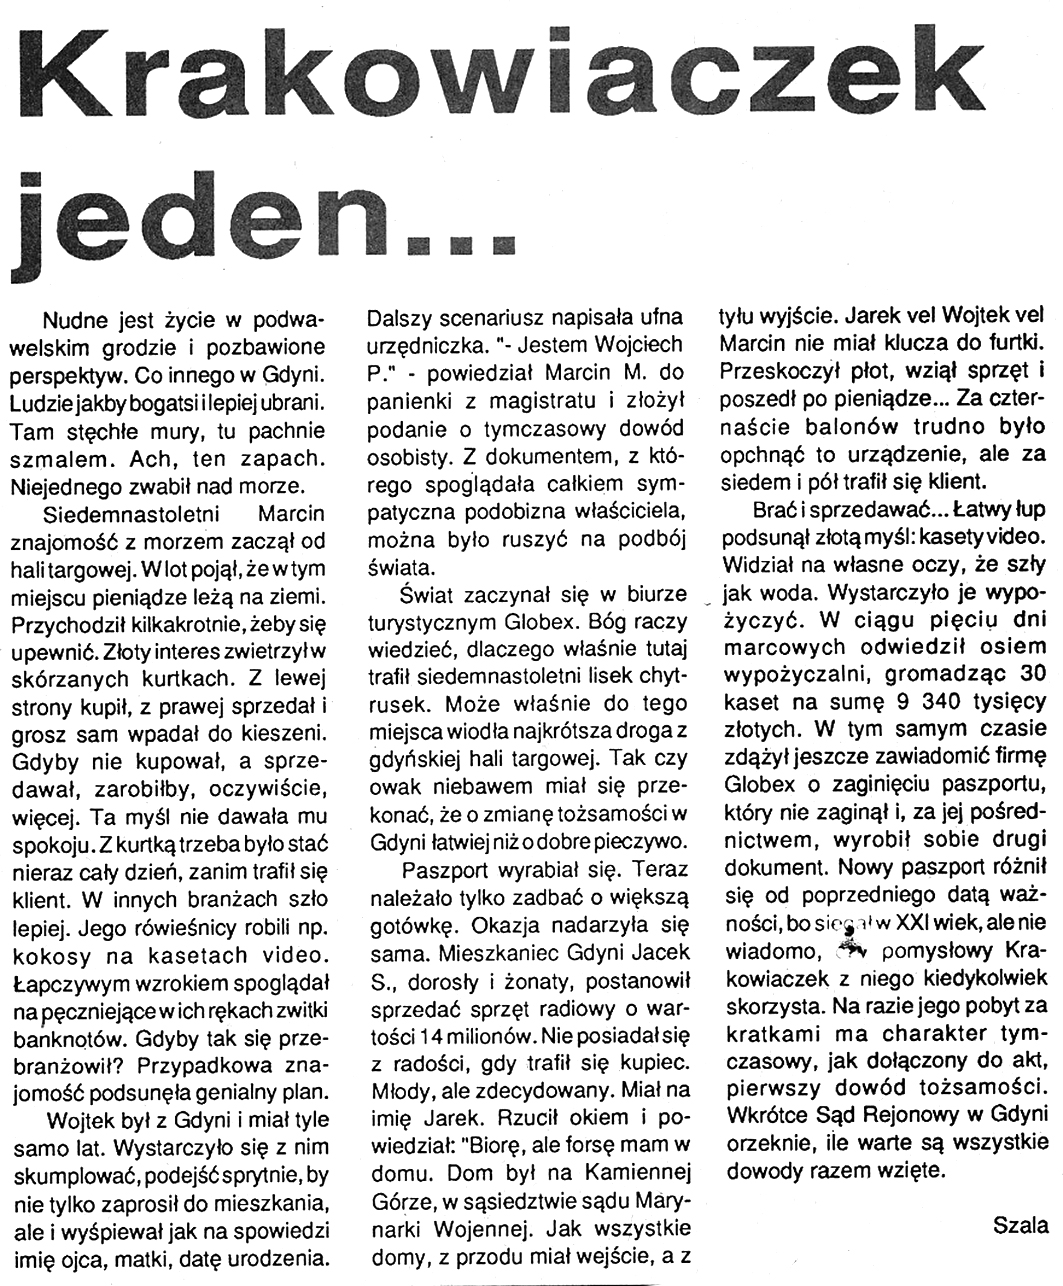 Krakowiaczek jeden ... // Szala // Kurier Gdyński. - 1992, nr 1, s. 5